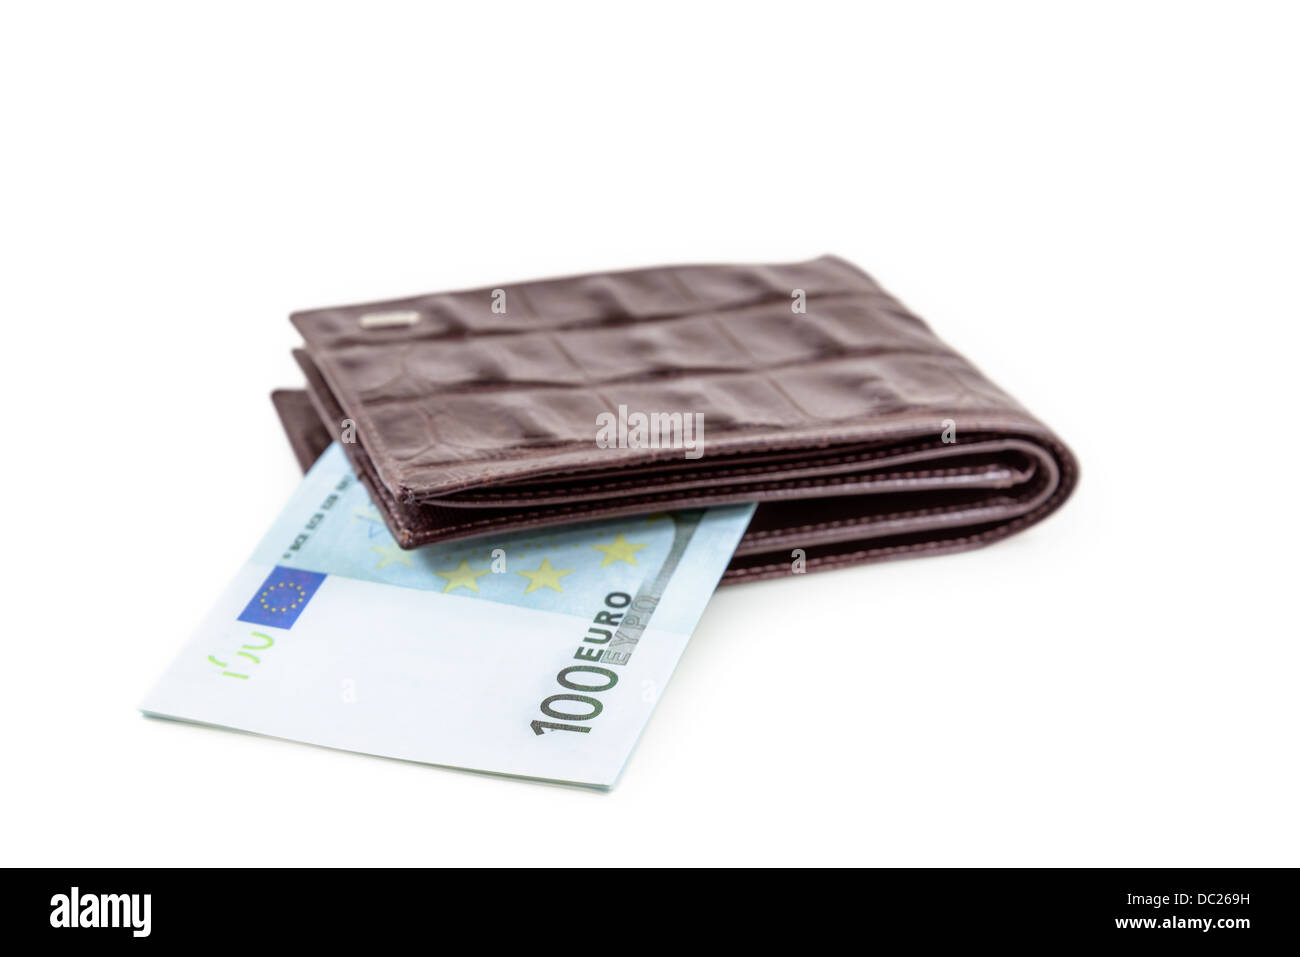 La billetera de cuero marrón con euro es fotografiado en close-up Foto de stock